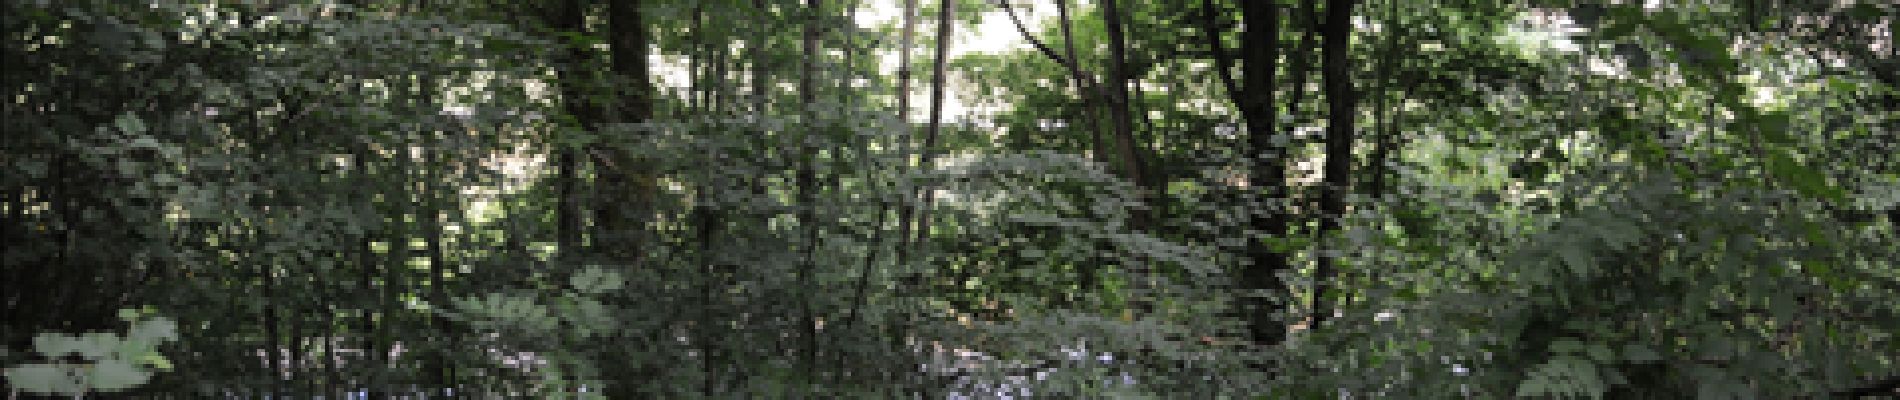 POI Tellin - 5 - Une forêt riveraine - Photo